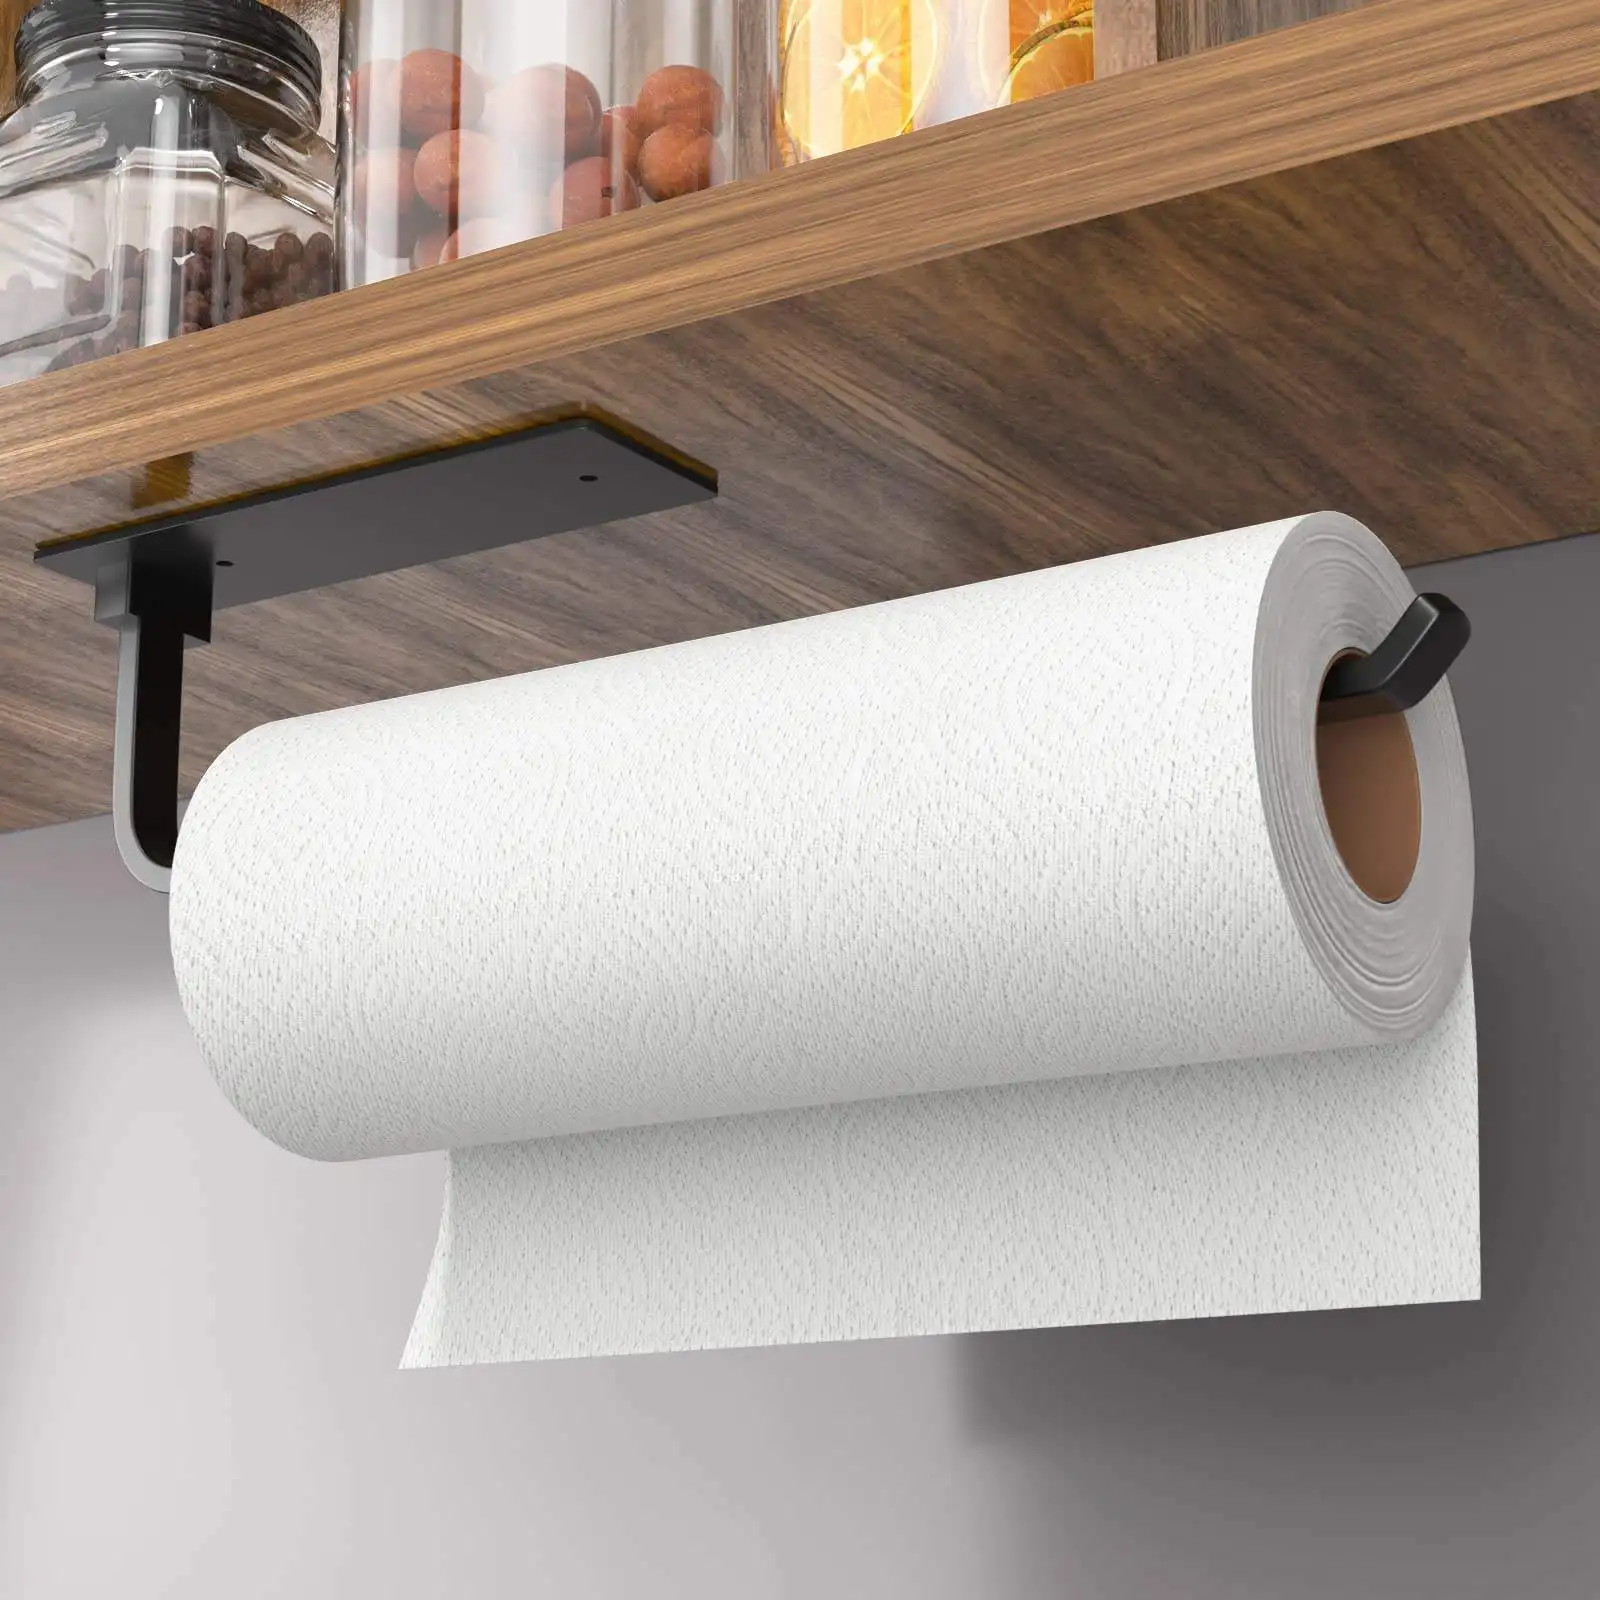 Mattschwarzer Papier handtuch halter unter dem Schrank für die Küche Verbesserter Aluminium-Küchen rollen halter Papier handtuch halter